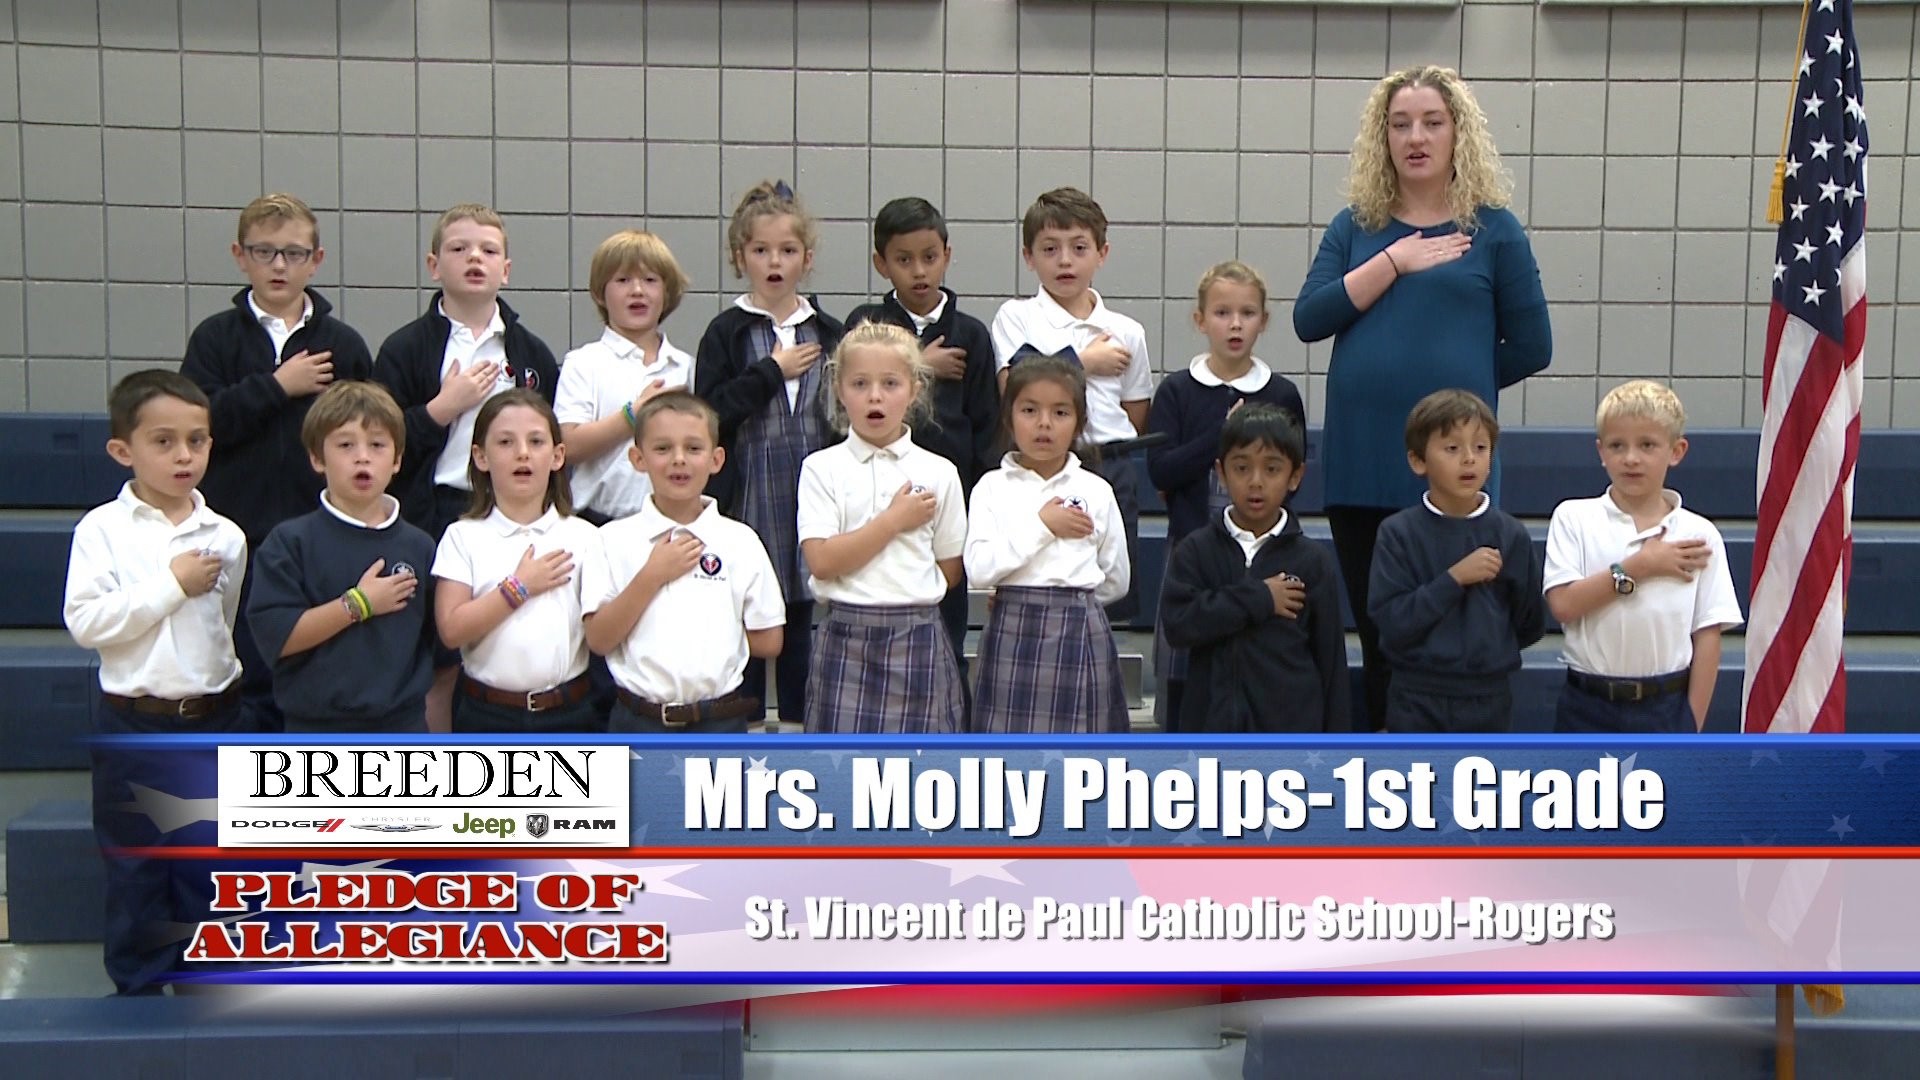 Mrs. Molly Phelps  1st Grade  St. Vincent de Paul Catholic School - Rogers